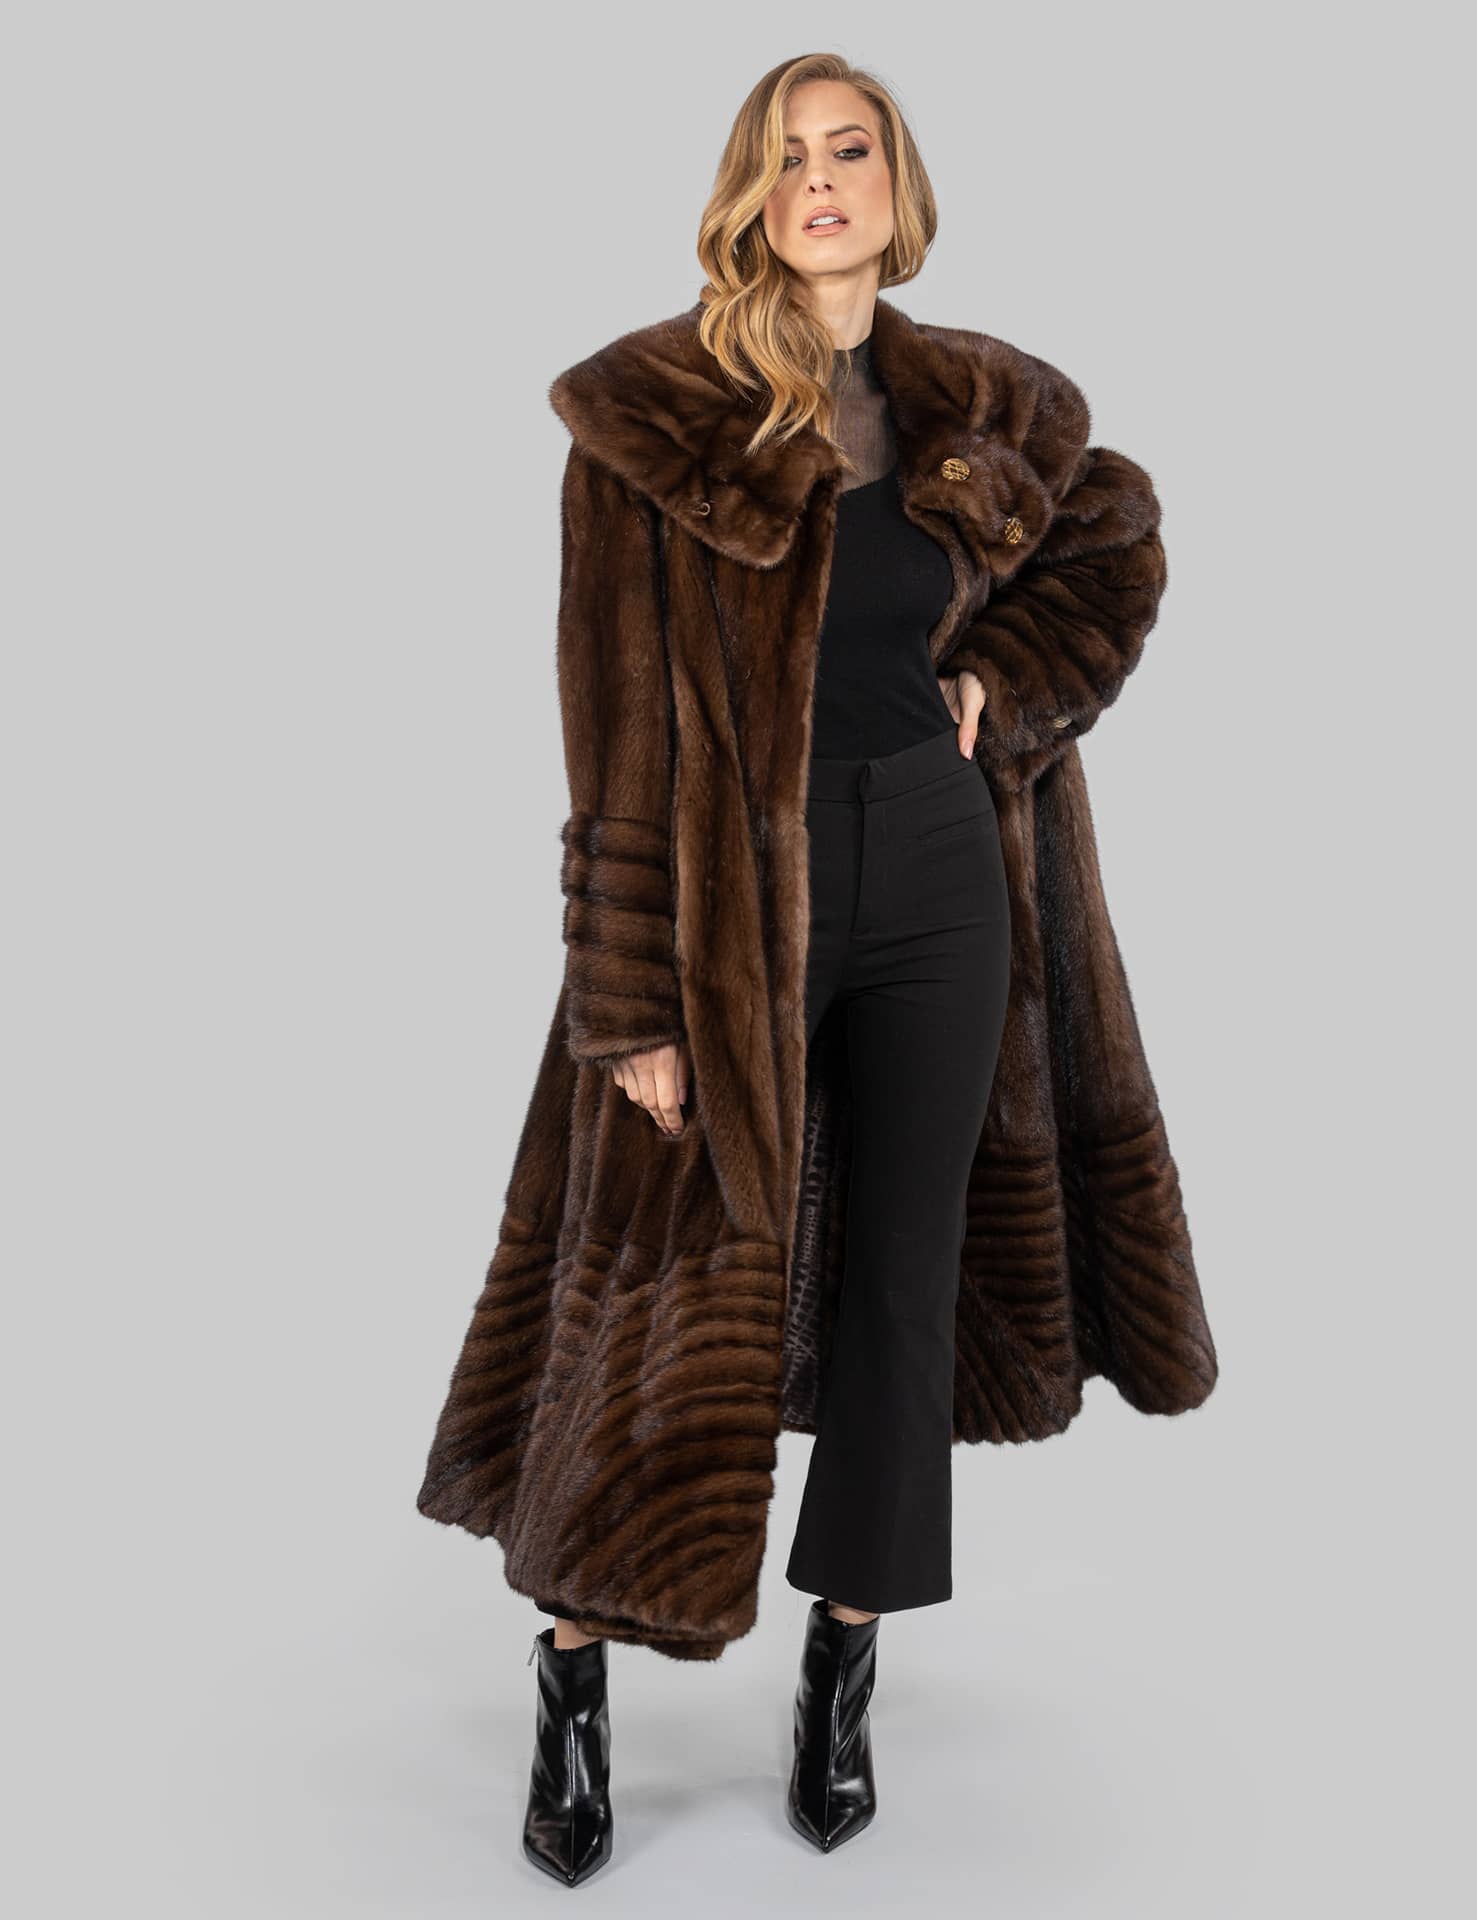 Black Full Pelt Real Fox Fur Coat Luxury Winter Women Warm Fur Outwear Plus  Size